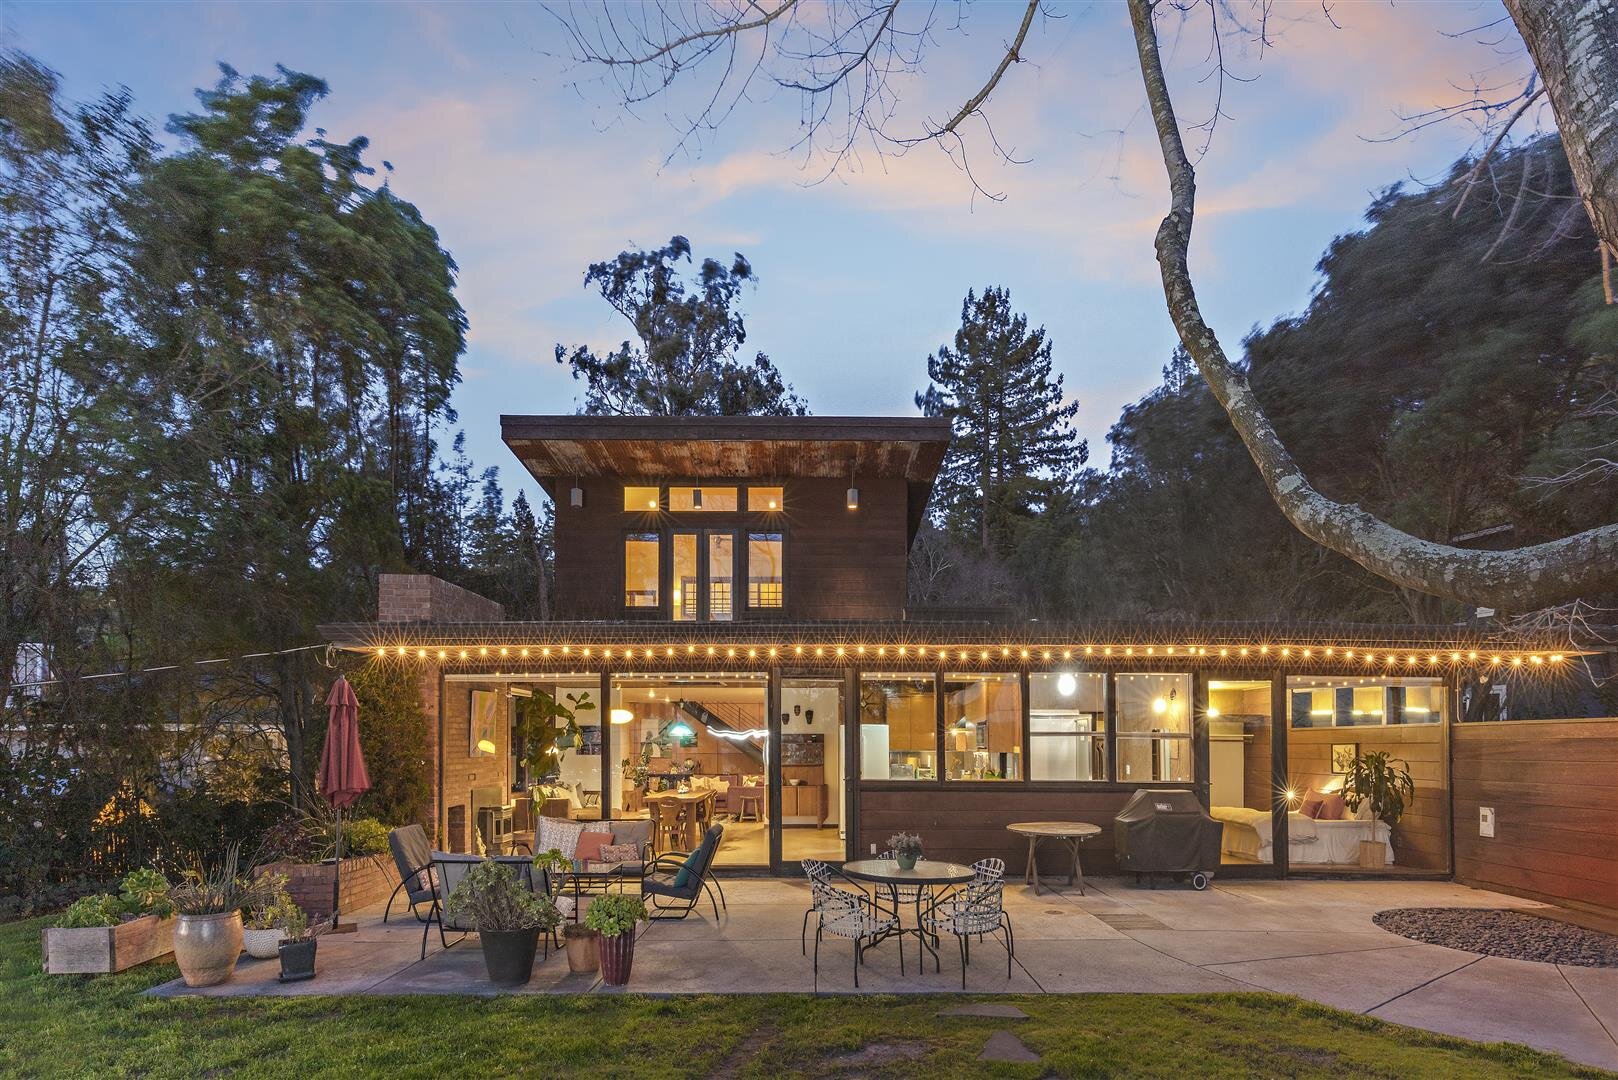 SFGate.com | March 2021 | Frank Lloyd Wright apprentice's Oakland mini-estate hits the market for $1.25M